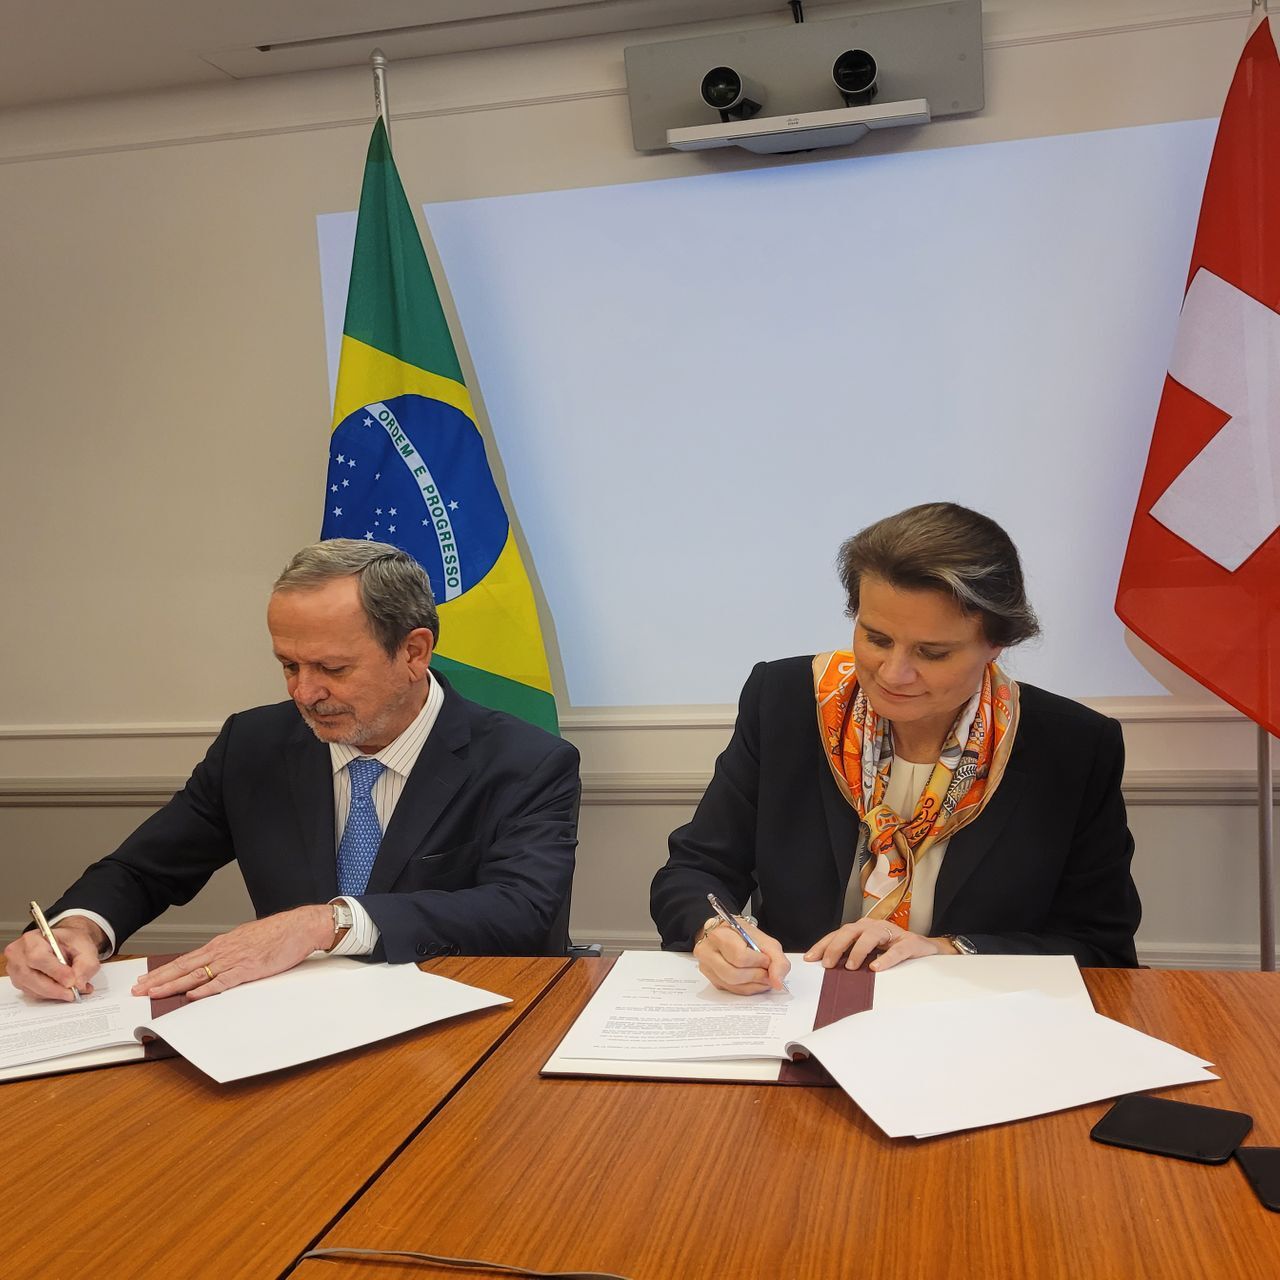 Martina Hirayama, Segretaria di Stato della Confederazione Svizzera, e Sergio Freitas de Almeida, Vize Ministro della Scienza, della Tecnologia e dell’Innovazione, hanno sottolineato il 15 marzo 2022 l’intenzione di approfondire le relazioni bilaterali